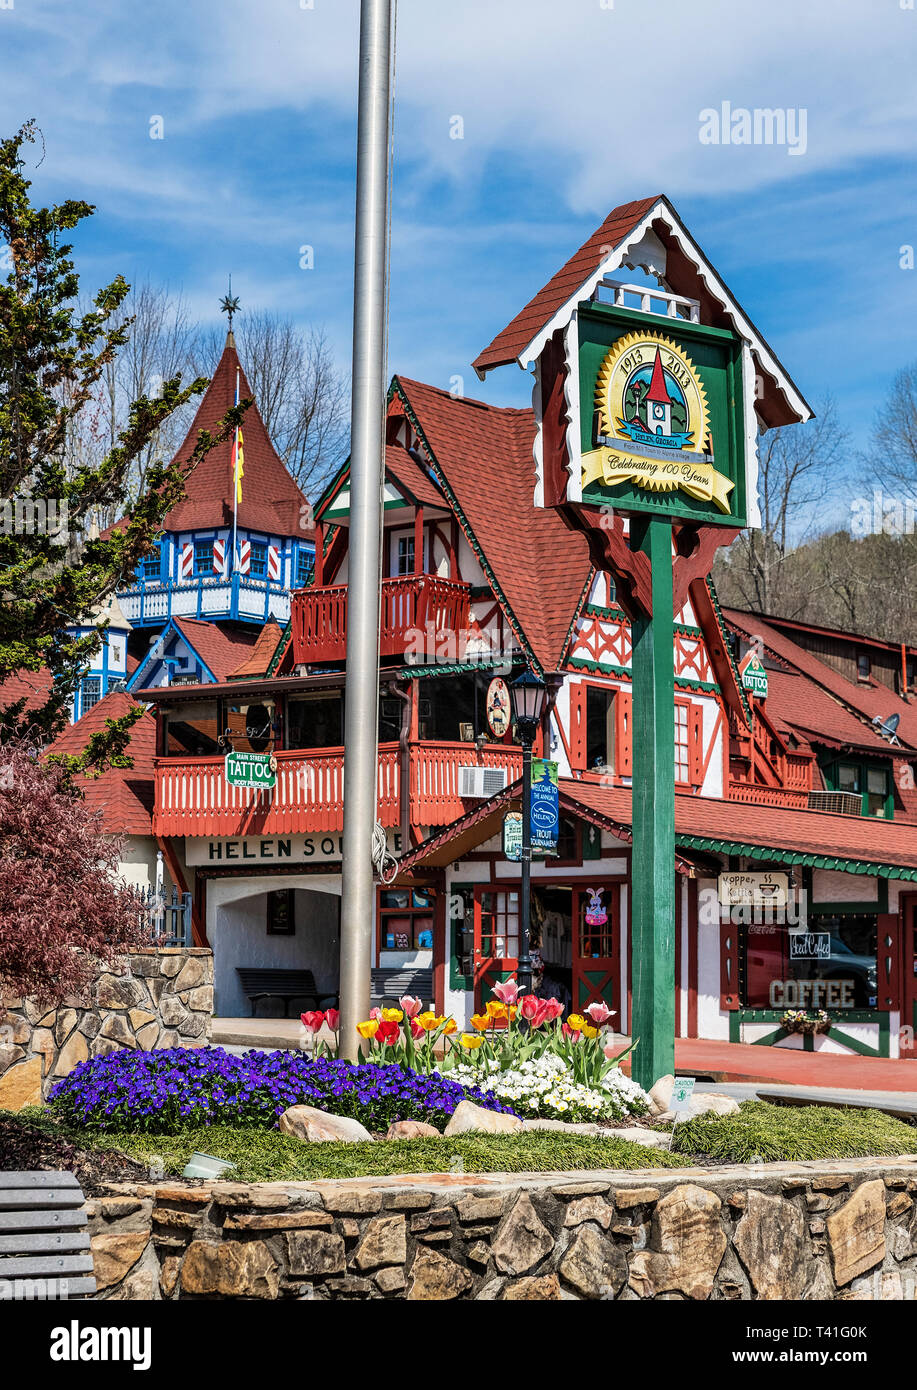 Helen, Georgia es una ciudad basada en un diseño de los alpes bávaros motif que la ha convertido en una atracción turística. Foto de stock